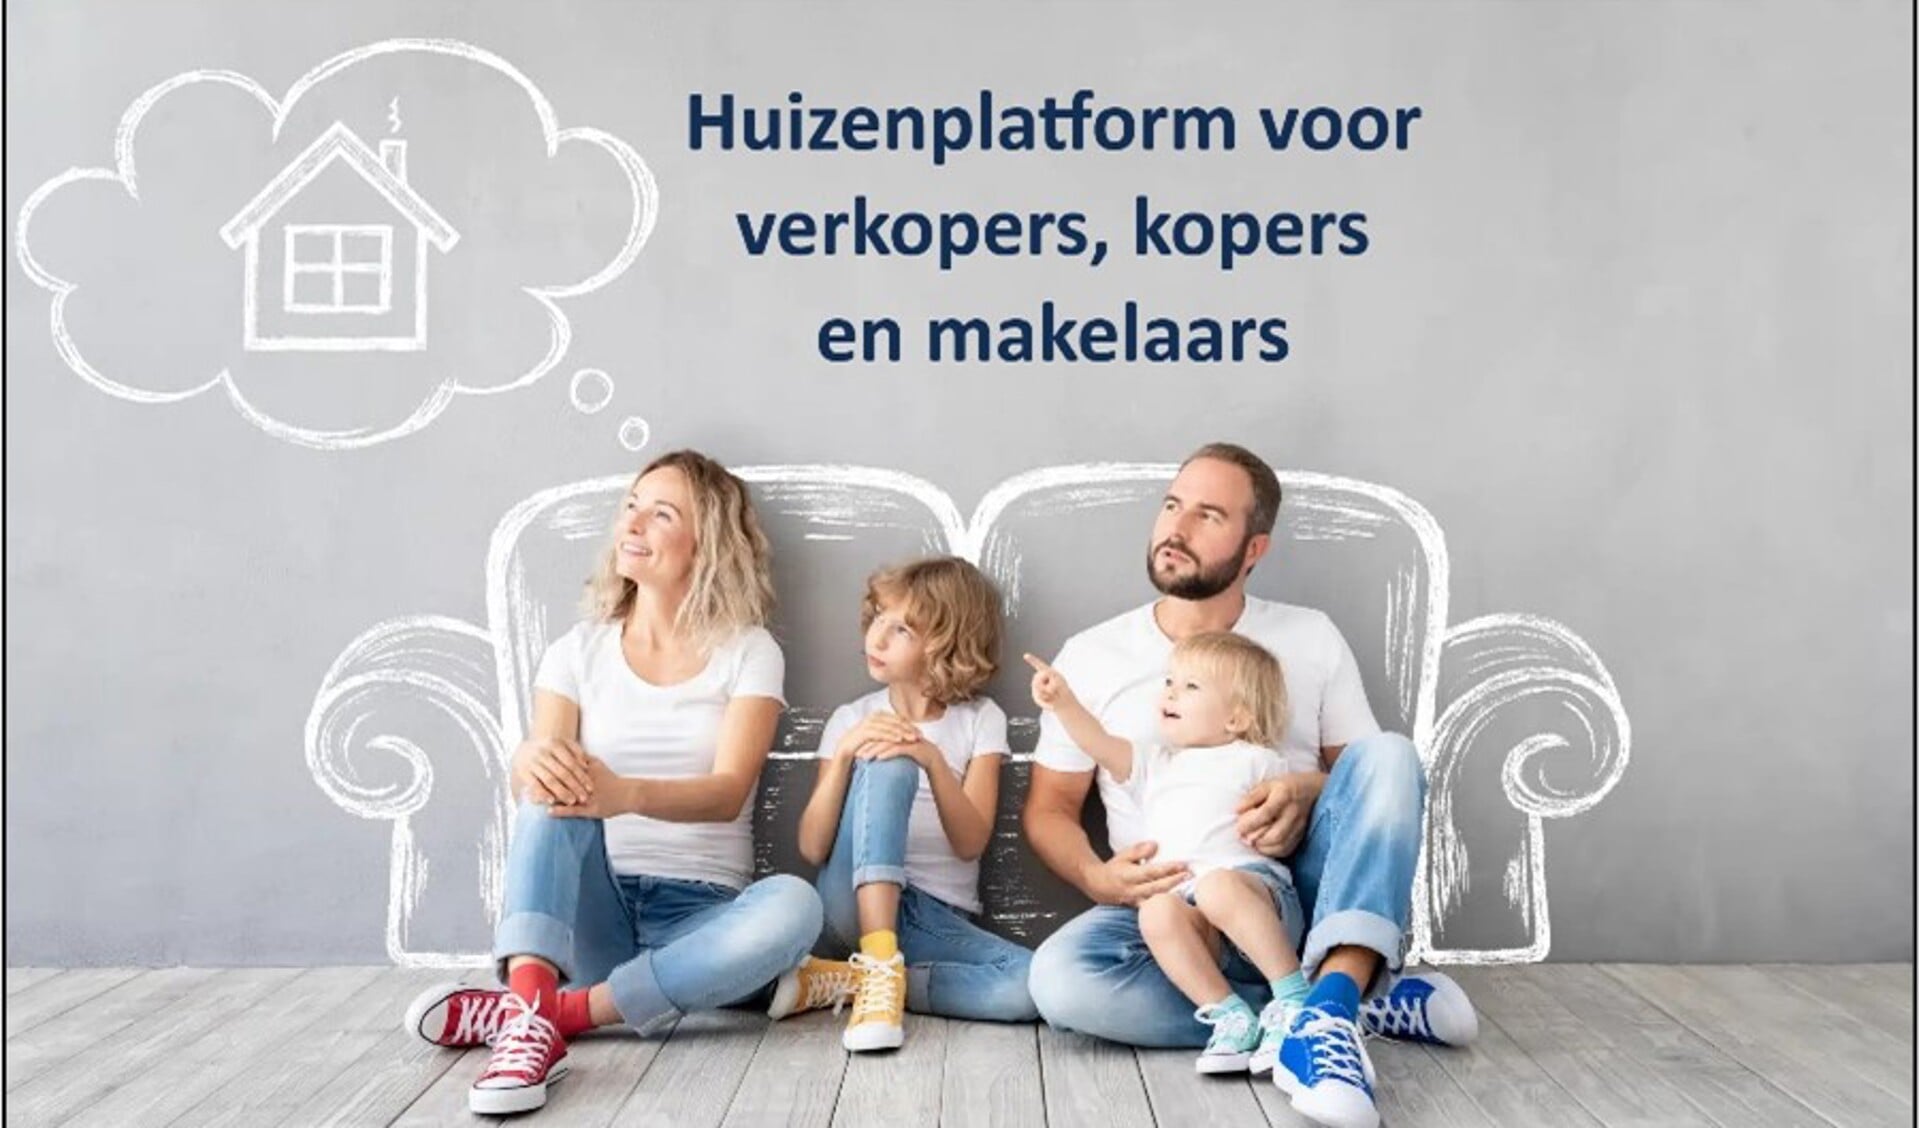 De nieuwe website van kijknaarhuizen.nl.